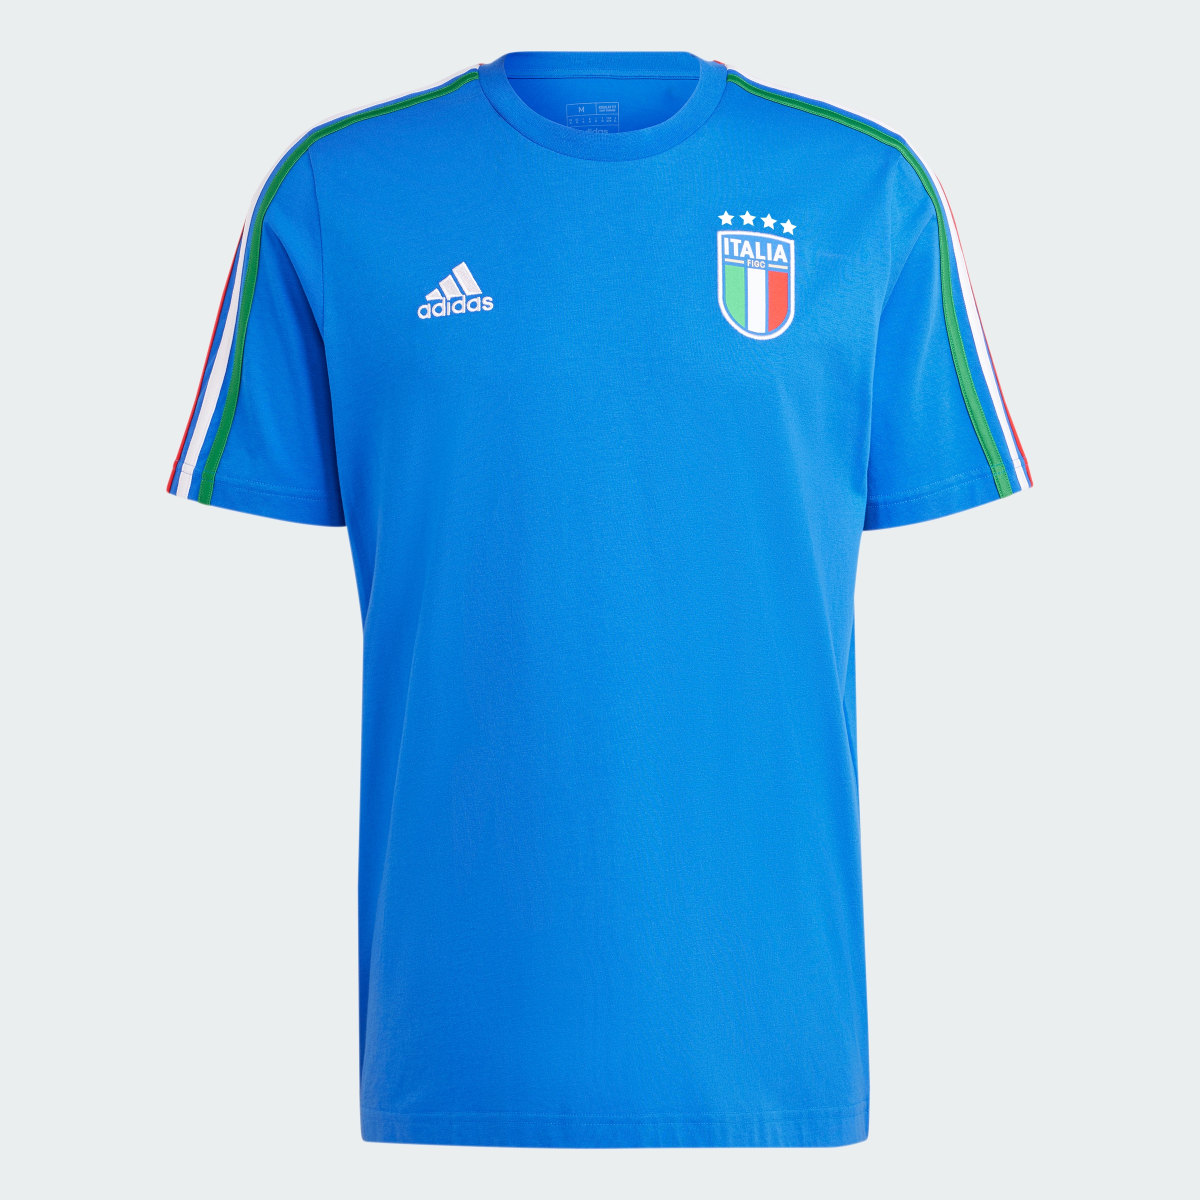 Adidas T-shirt 3-Stripes DNA da Itália. 5